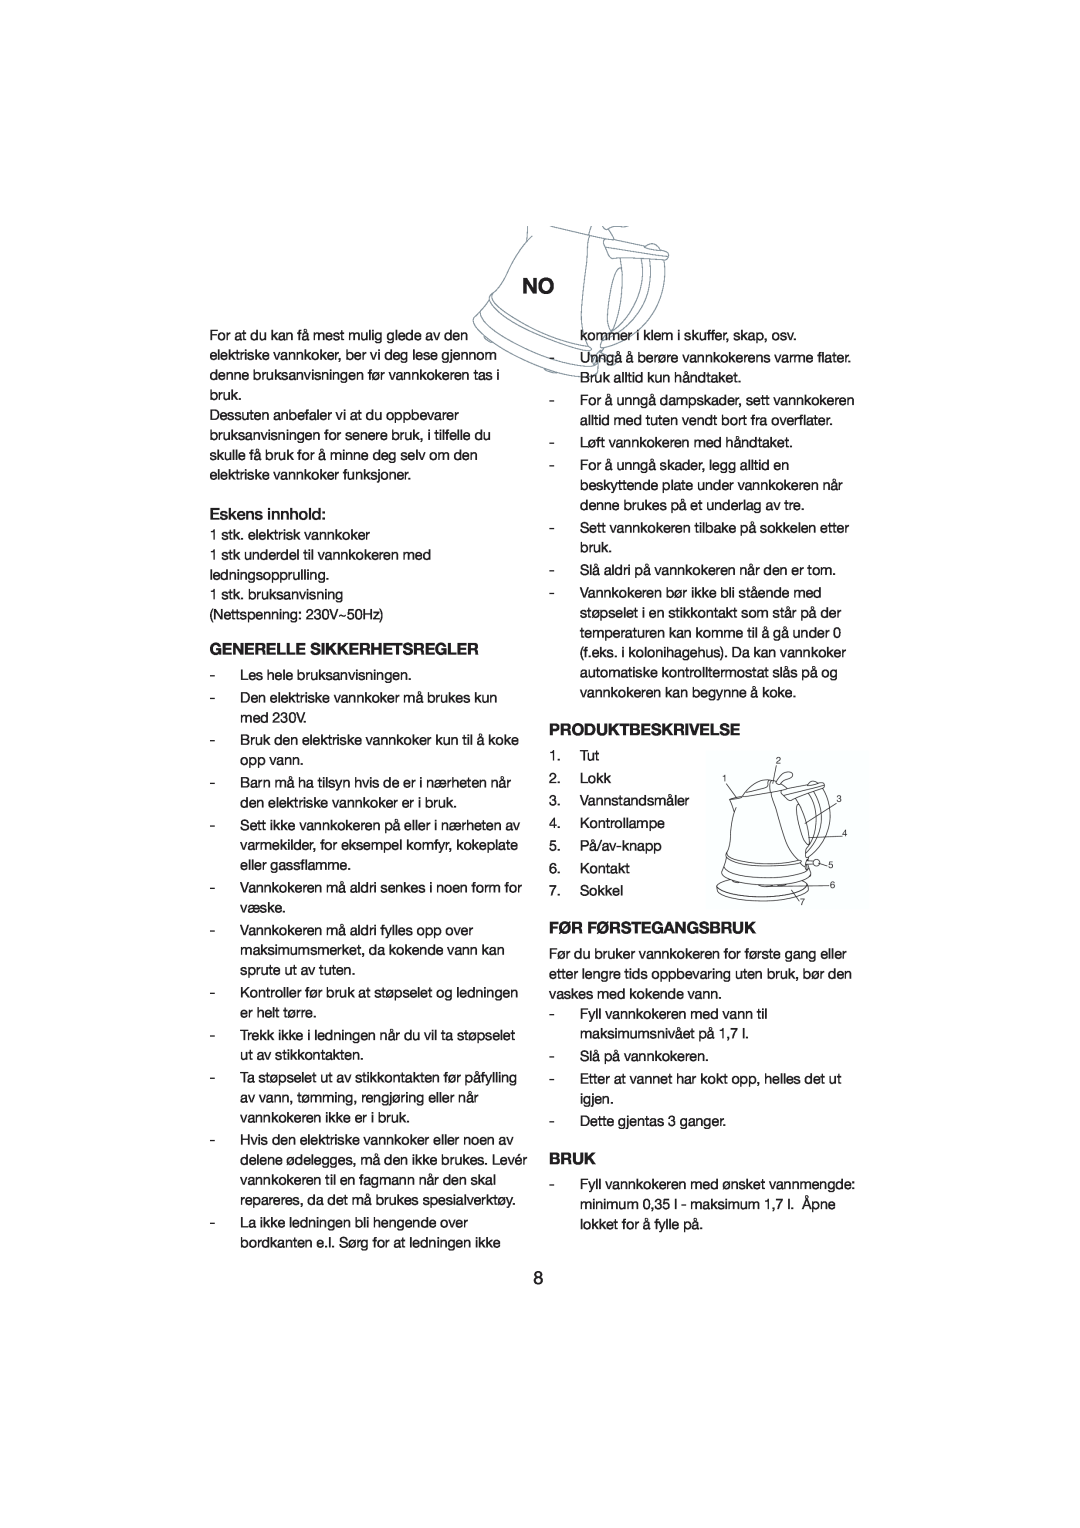 Melissa 245-018 manual Eskens innhold, Generelle Sikkerhetsregler, Produktbeskrivelse, Før Førstegangsbruk 